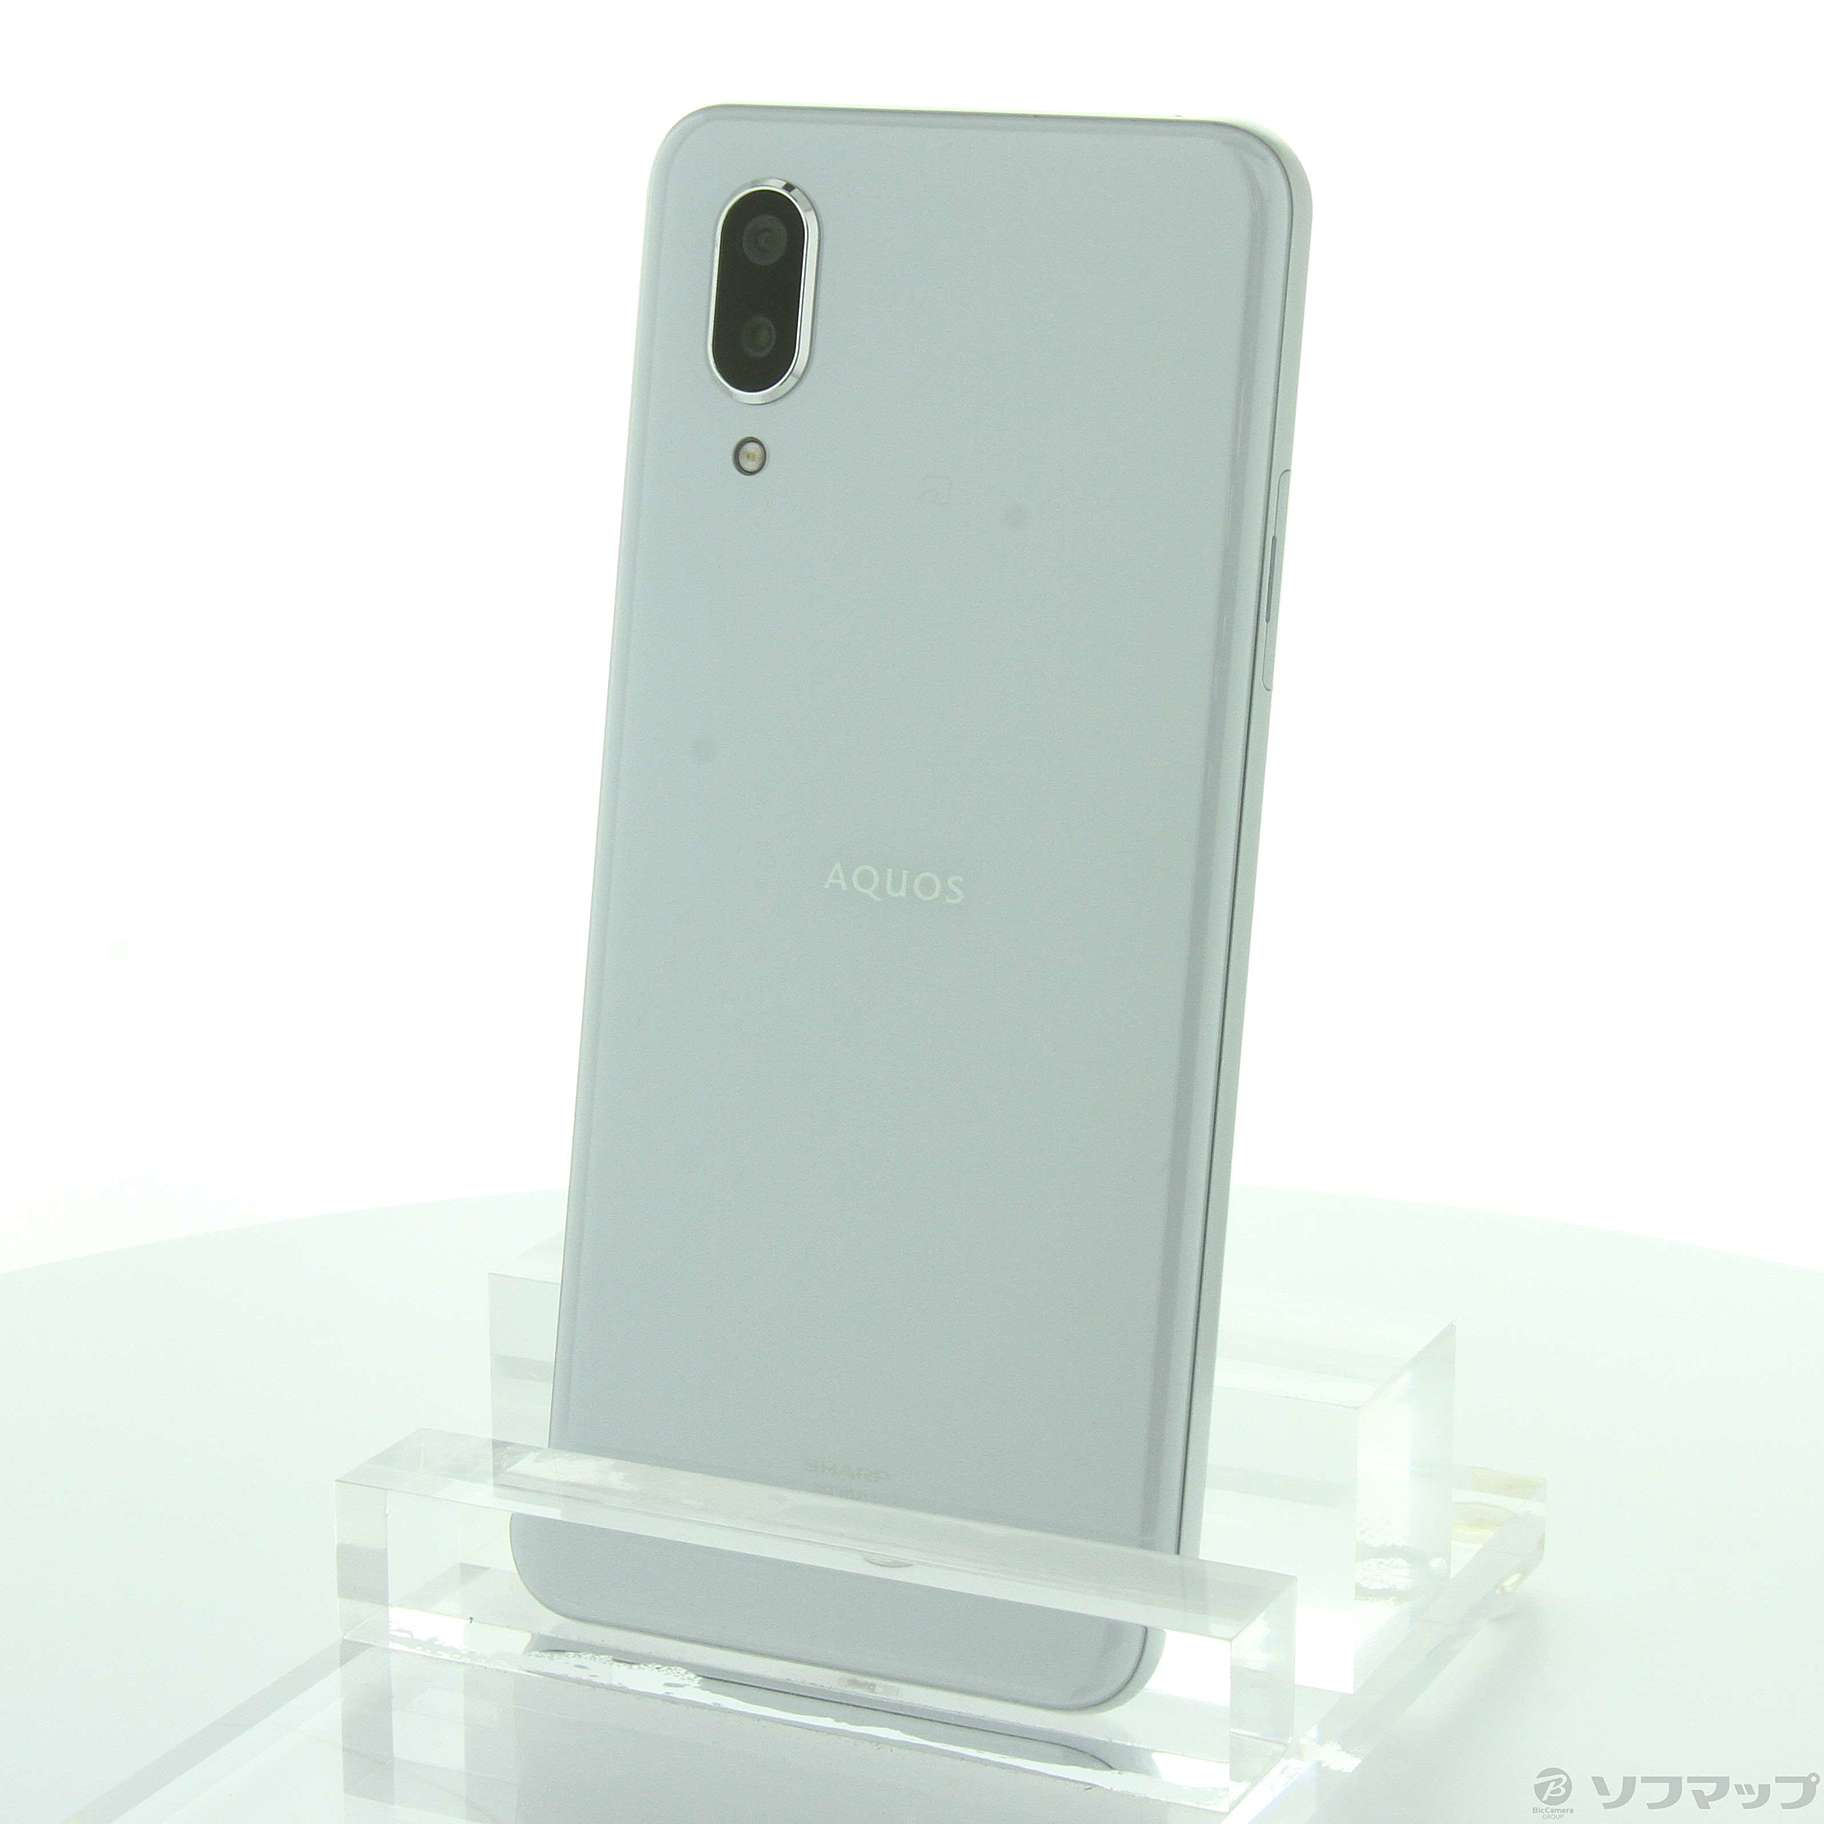 AQUOS sense3 plus 楽天版 64GB ホワイト SH-RM11 SIMフリー